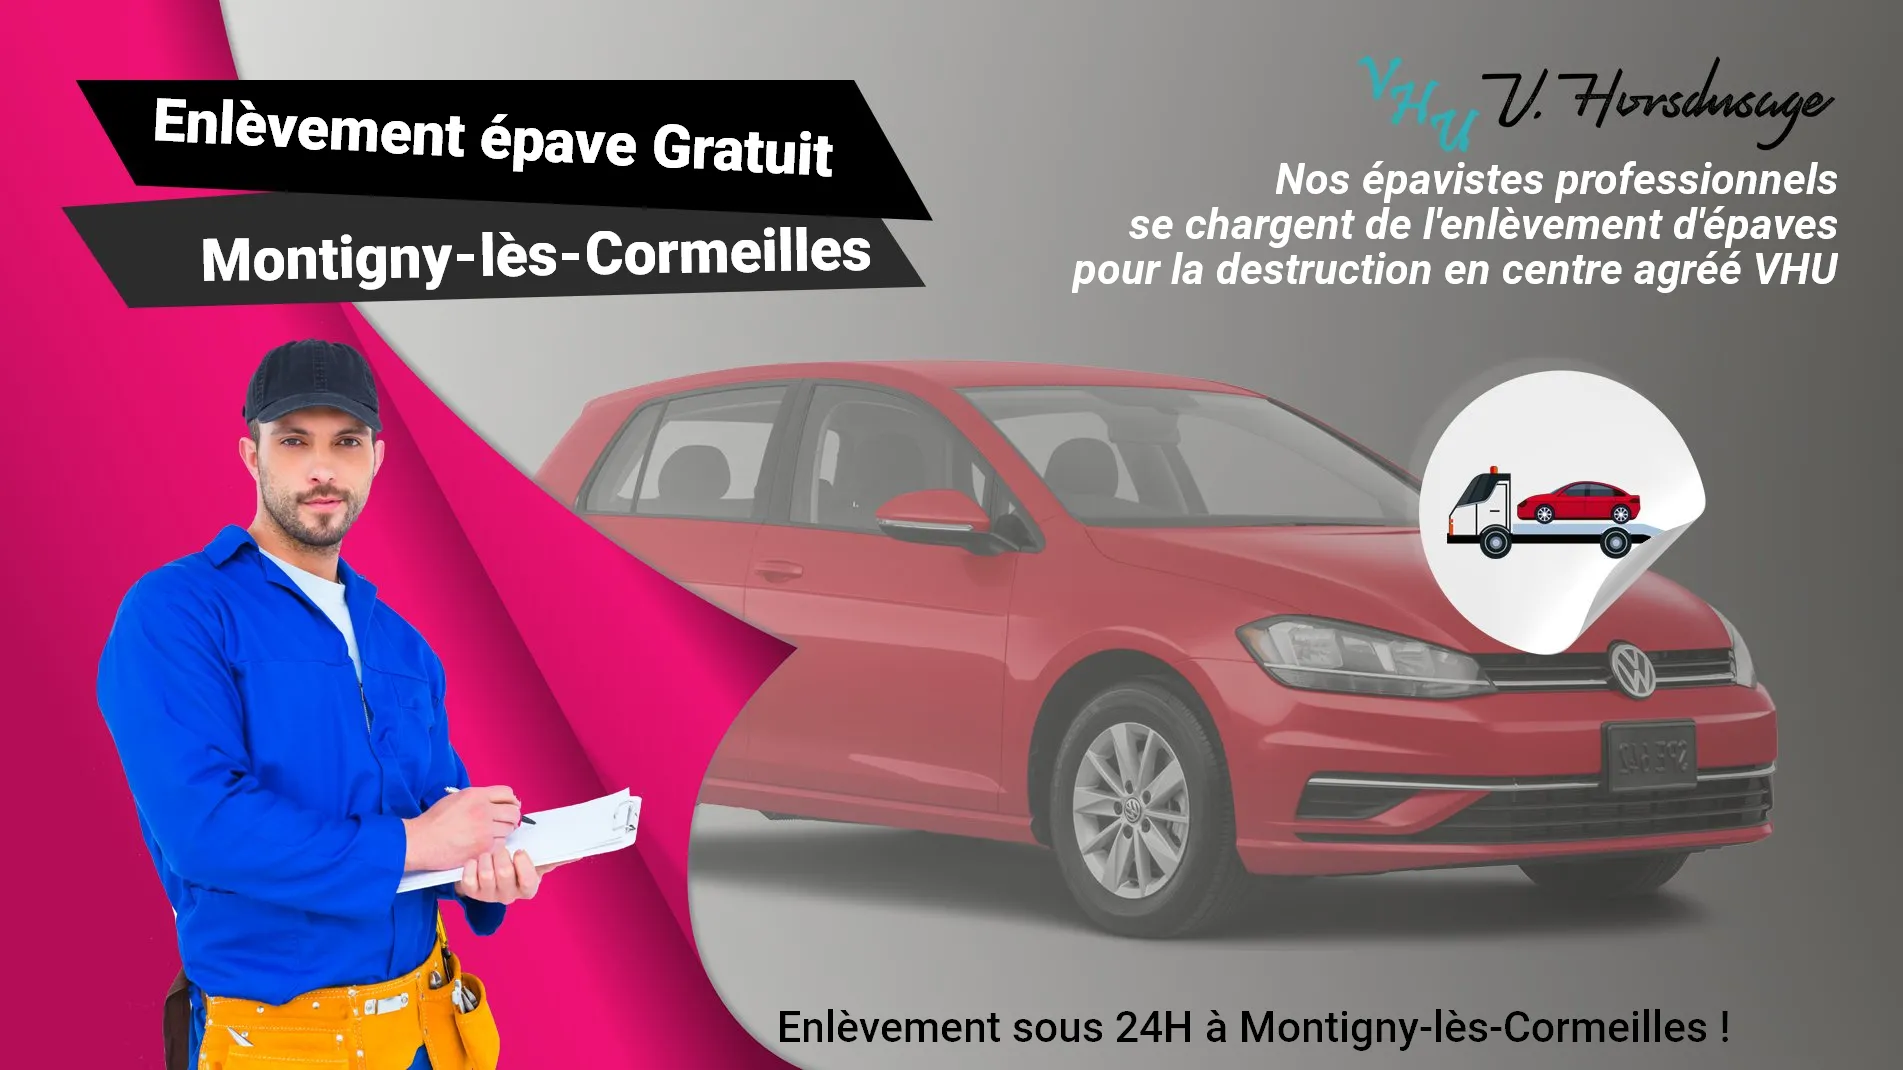 Pour un enlèvement gratuit à Montigny-lès-Cormeilles, contactez nos épavistes agréé VHU